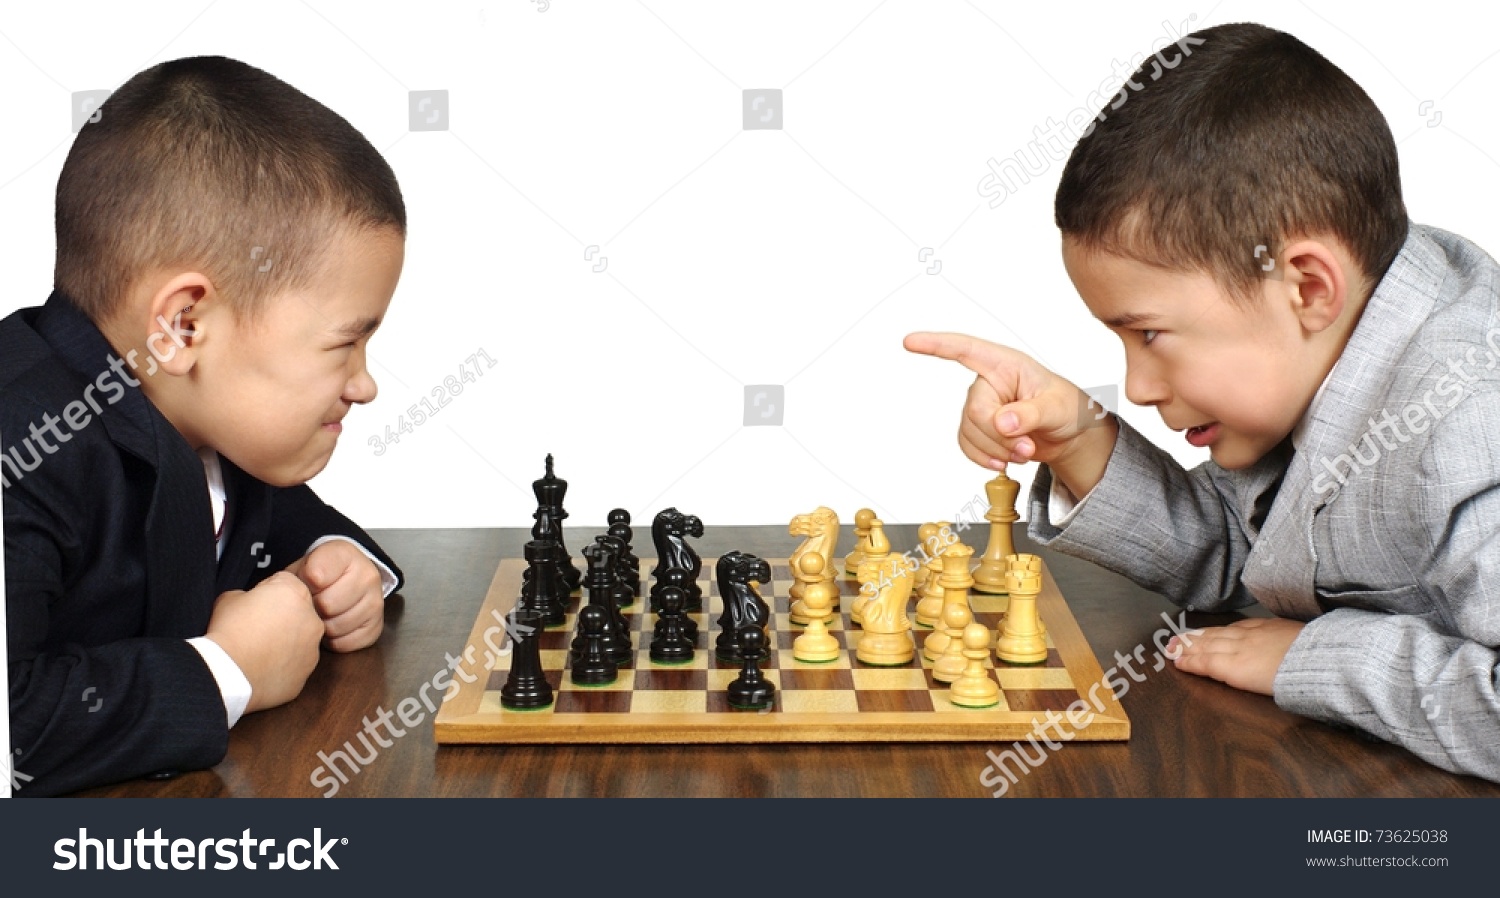 Offer playing. Шахматы влияние на детей. Шахматы ребёнок счастье. Соревное у детей по шахматам стоковые. Дети говорят о пользе шахмат.